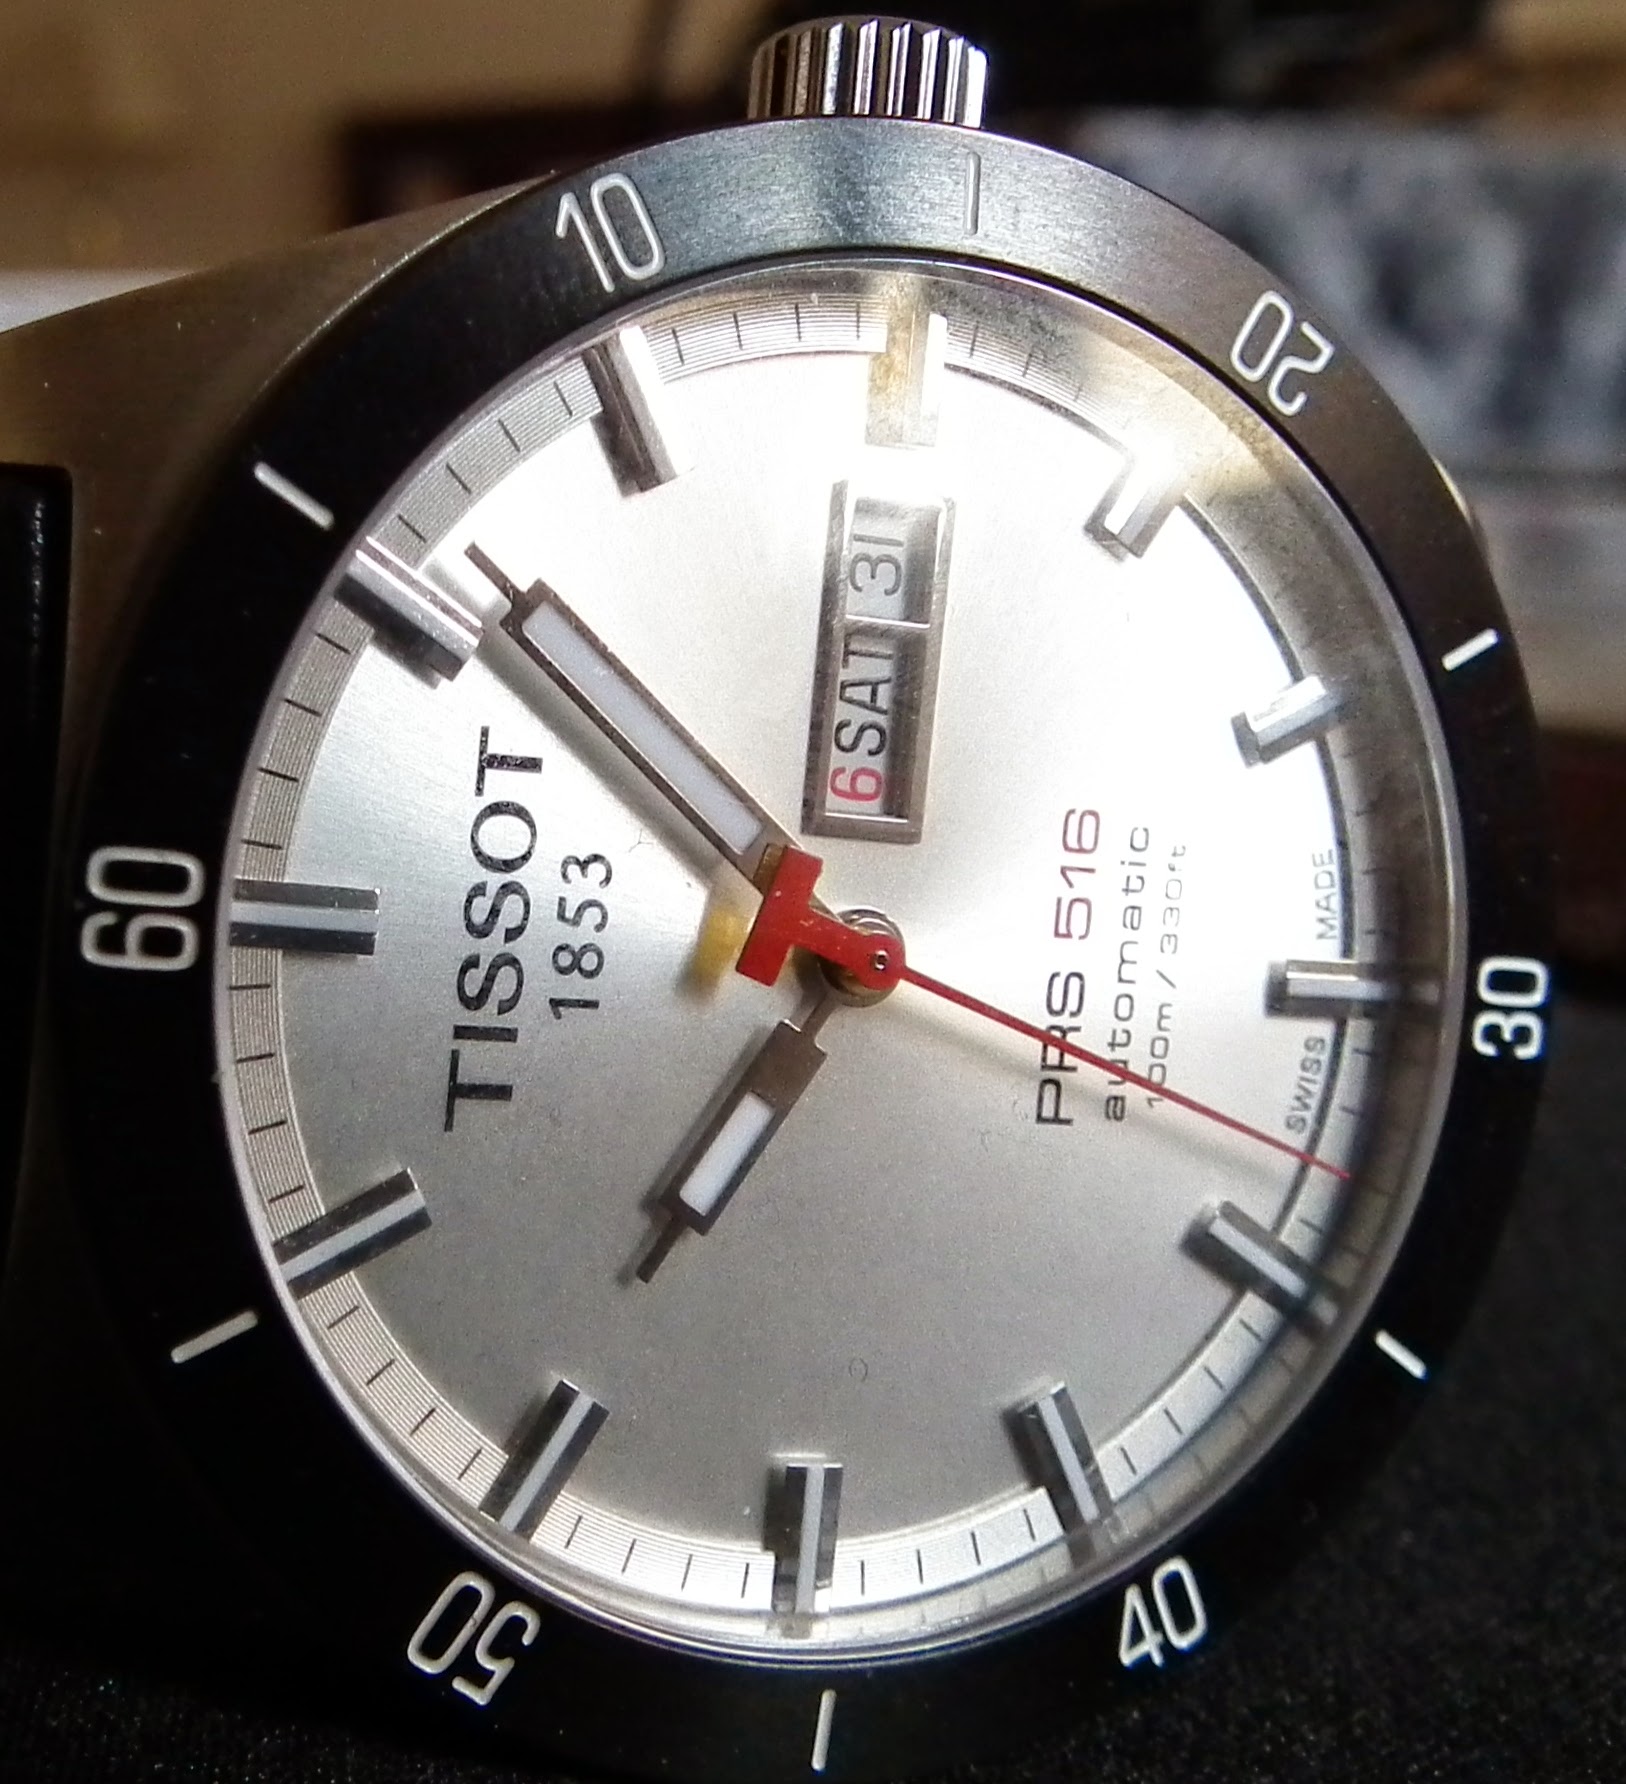 Relojes Tissot: la mejor relación calidad-precio.